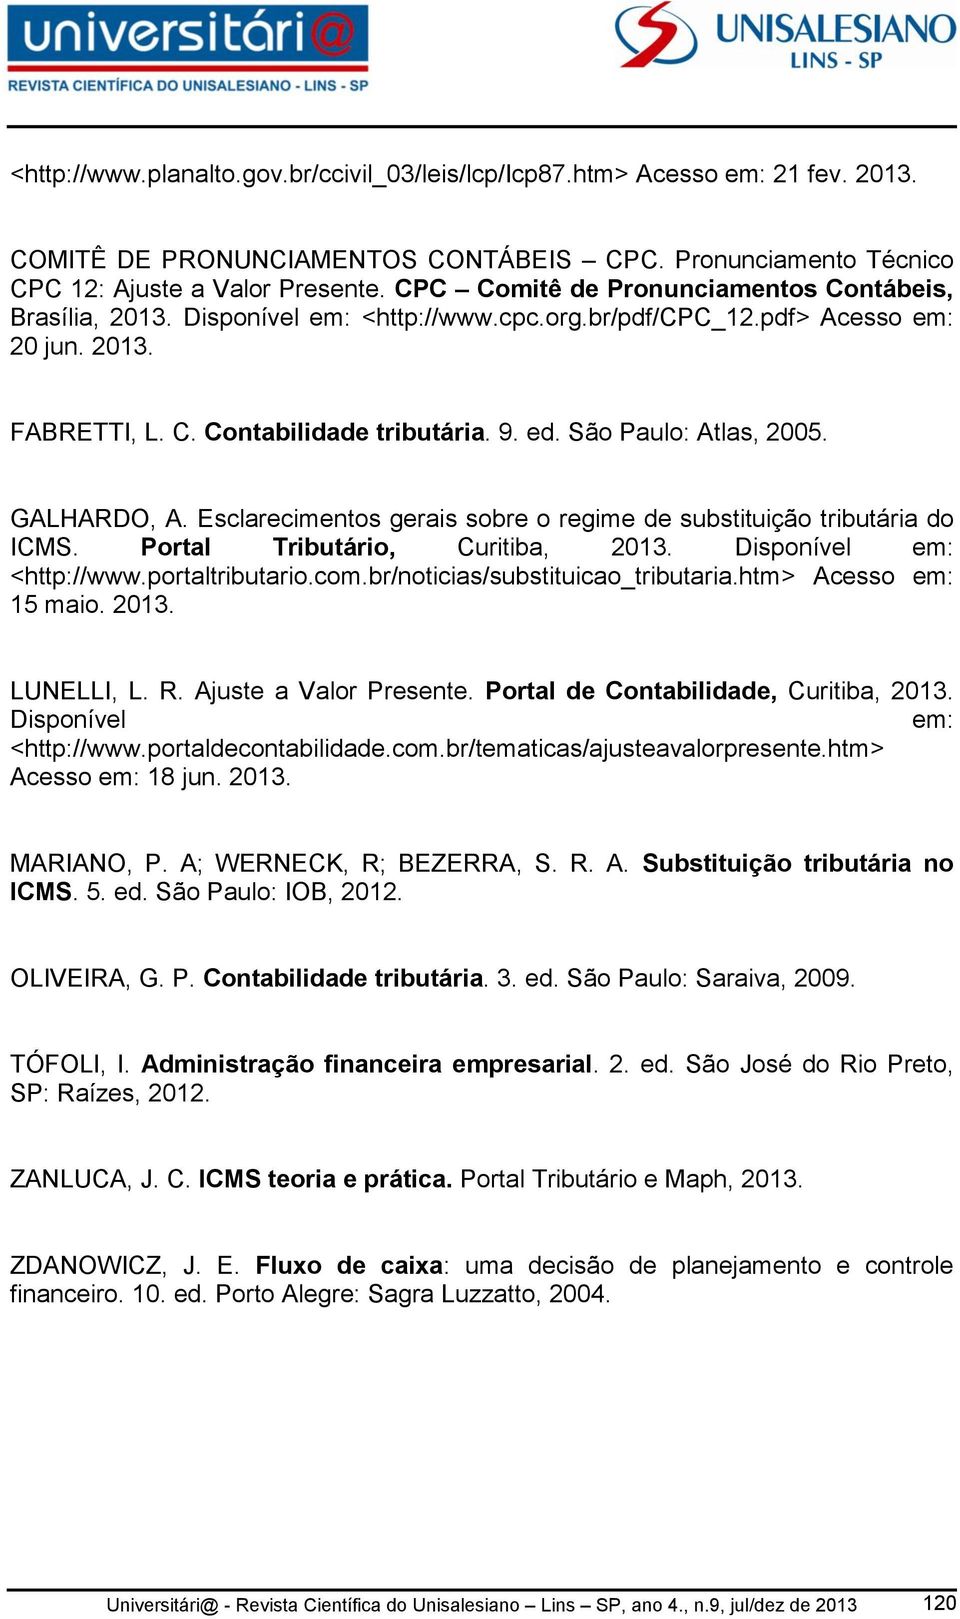 São Paulo: Atlas, 2005. GALHARDO, A. Esclarecimentos gerais sobre o regime de substituição tributária do ICMS. Portal Tributário, Curitiba, 2013. Disponível em: <http://www.portaltributario.com.